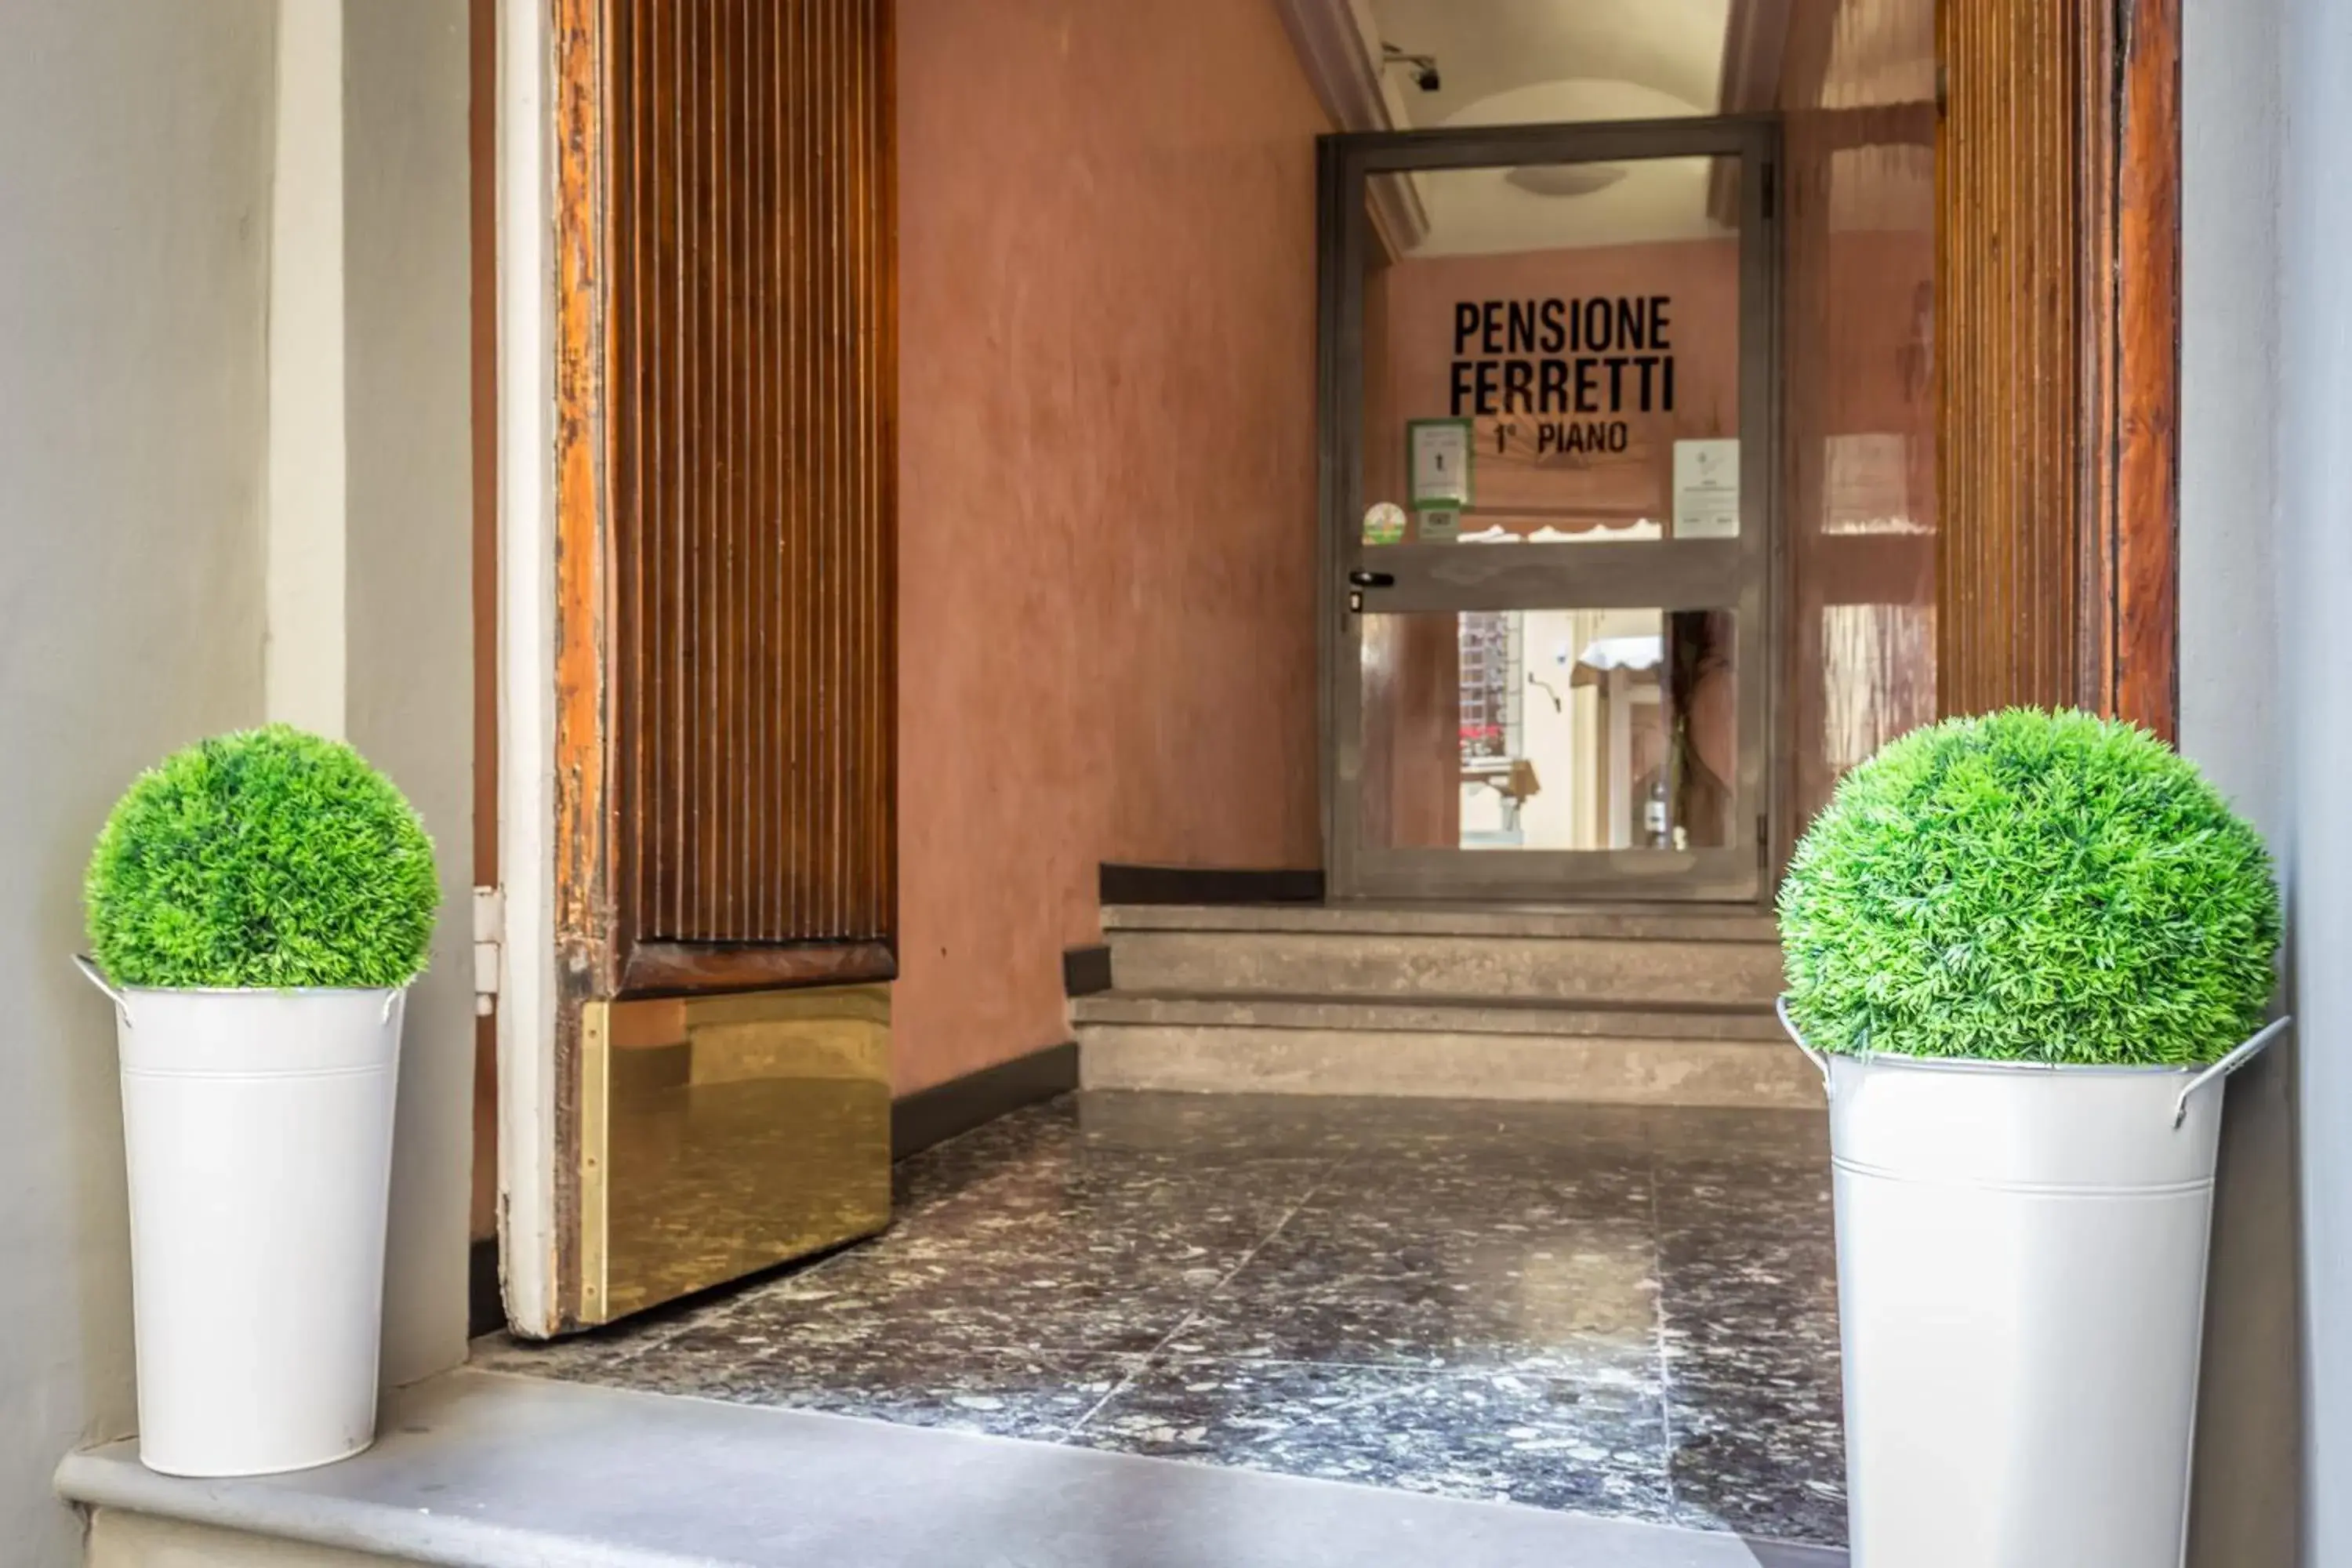 Facade/entrance in Hotel Ferretti